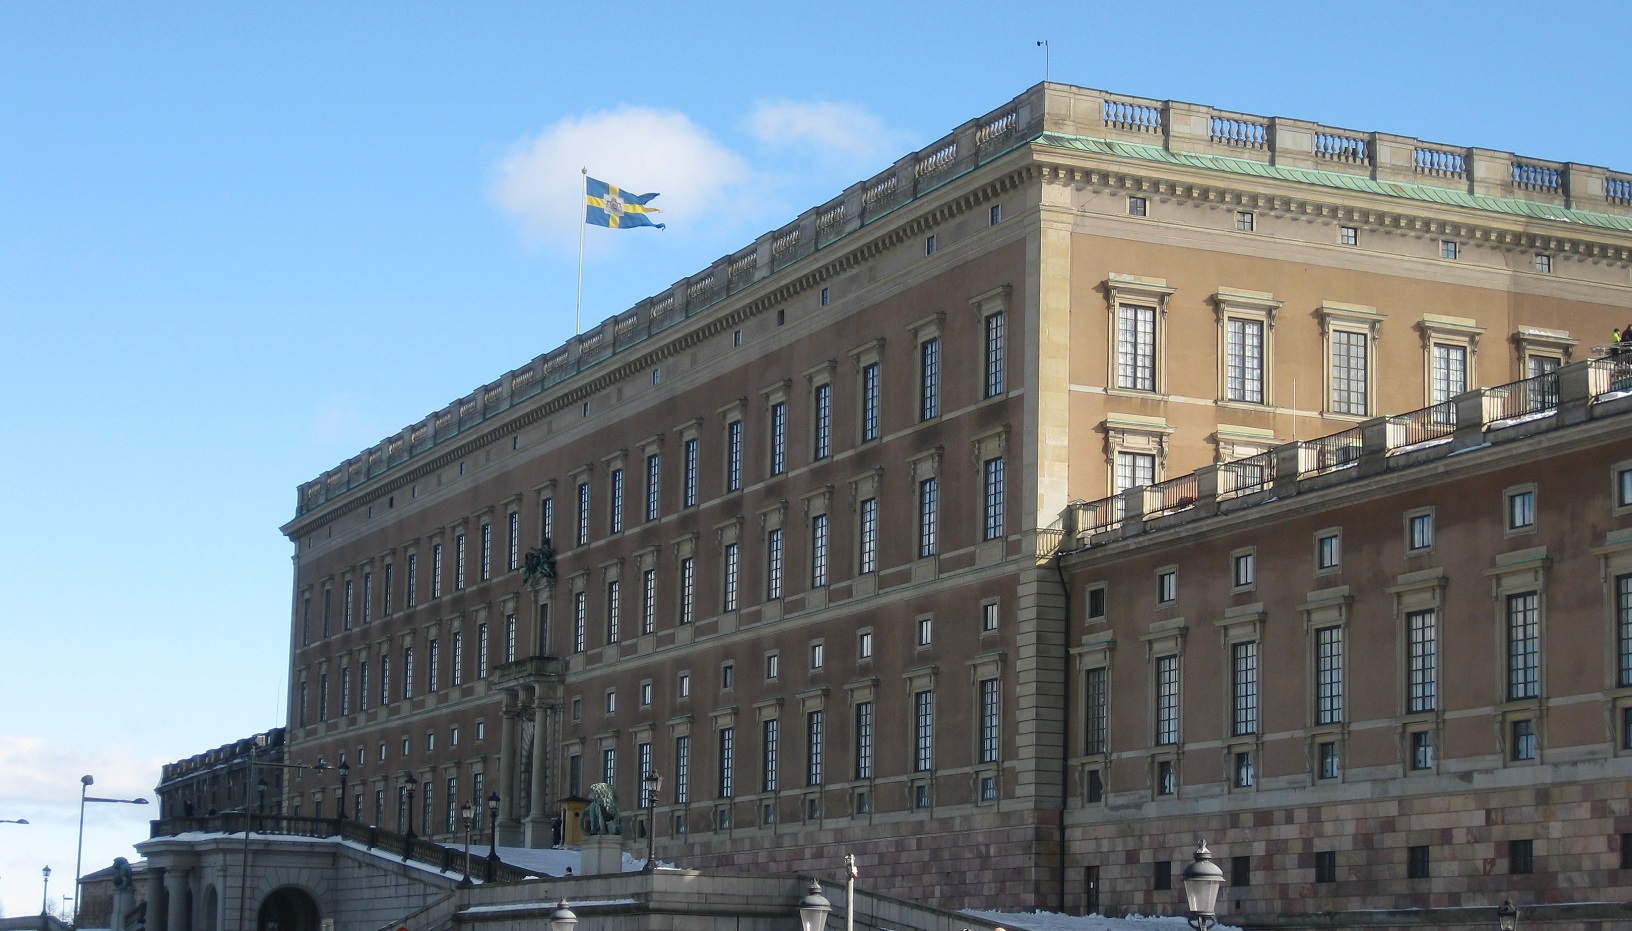 Königliches Schloss Stockholm